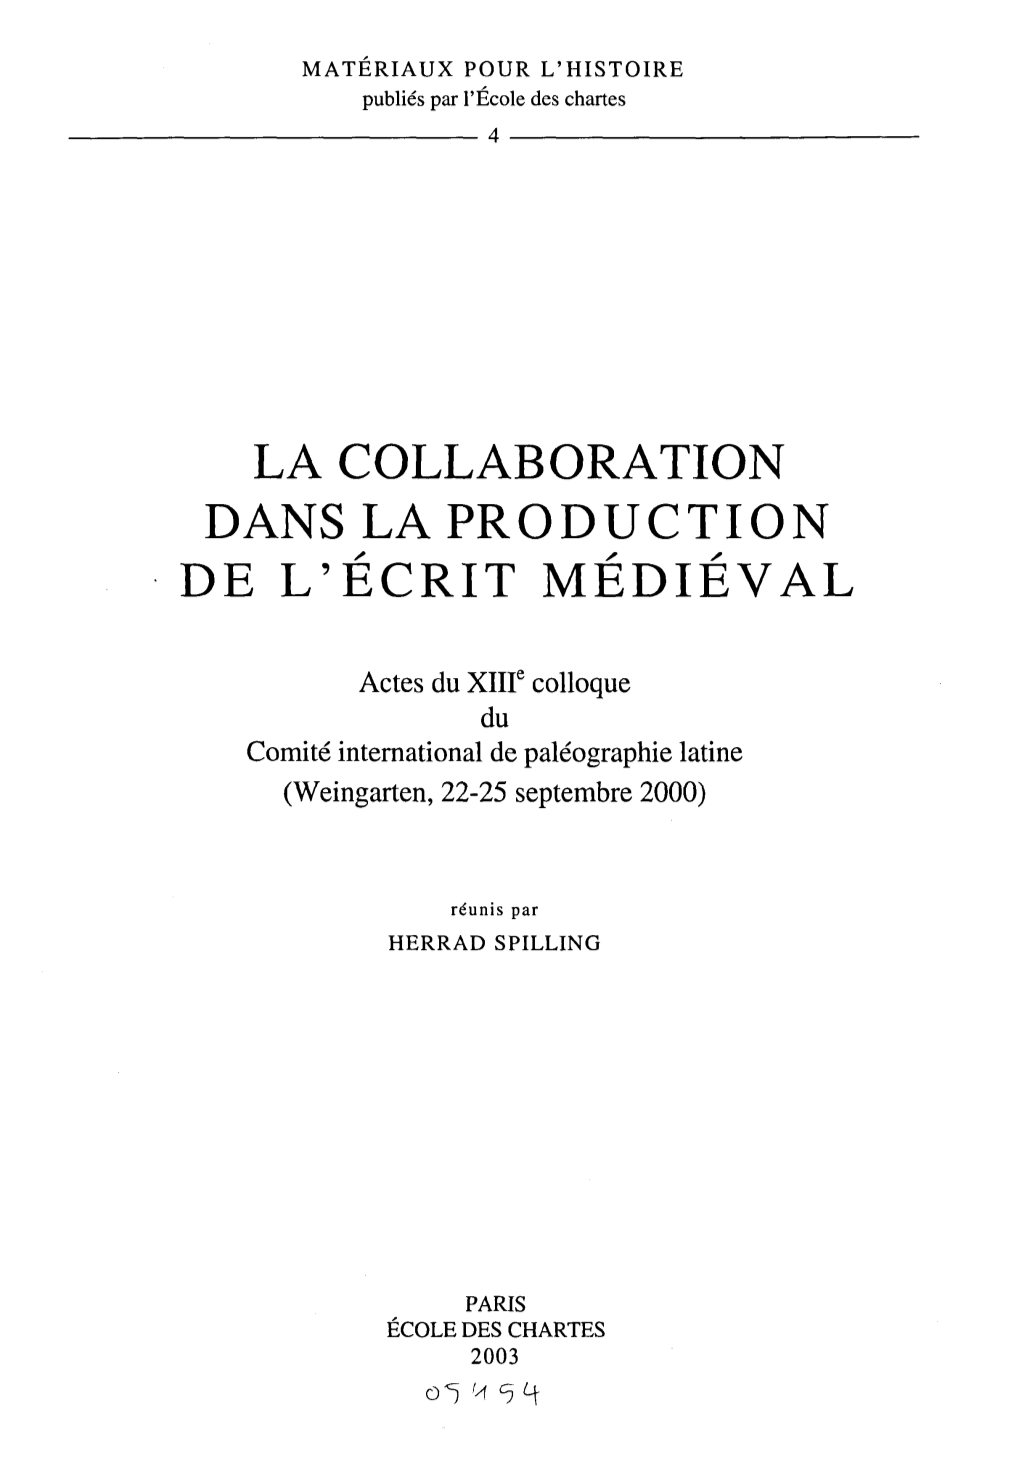 La Collaboration Dans La Production De L'ecrit Medieval